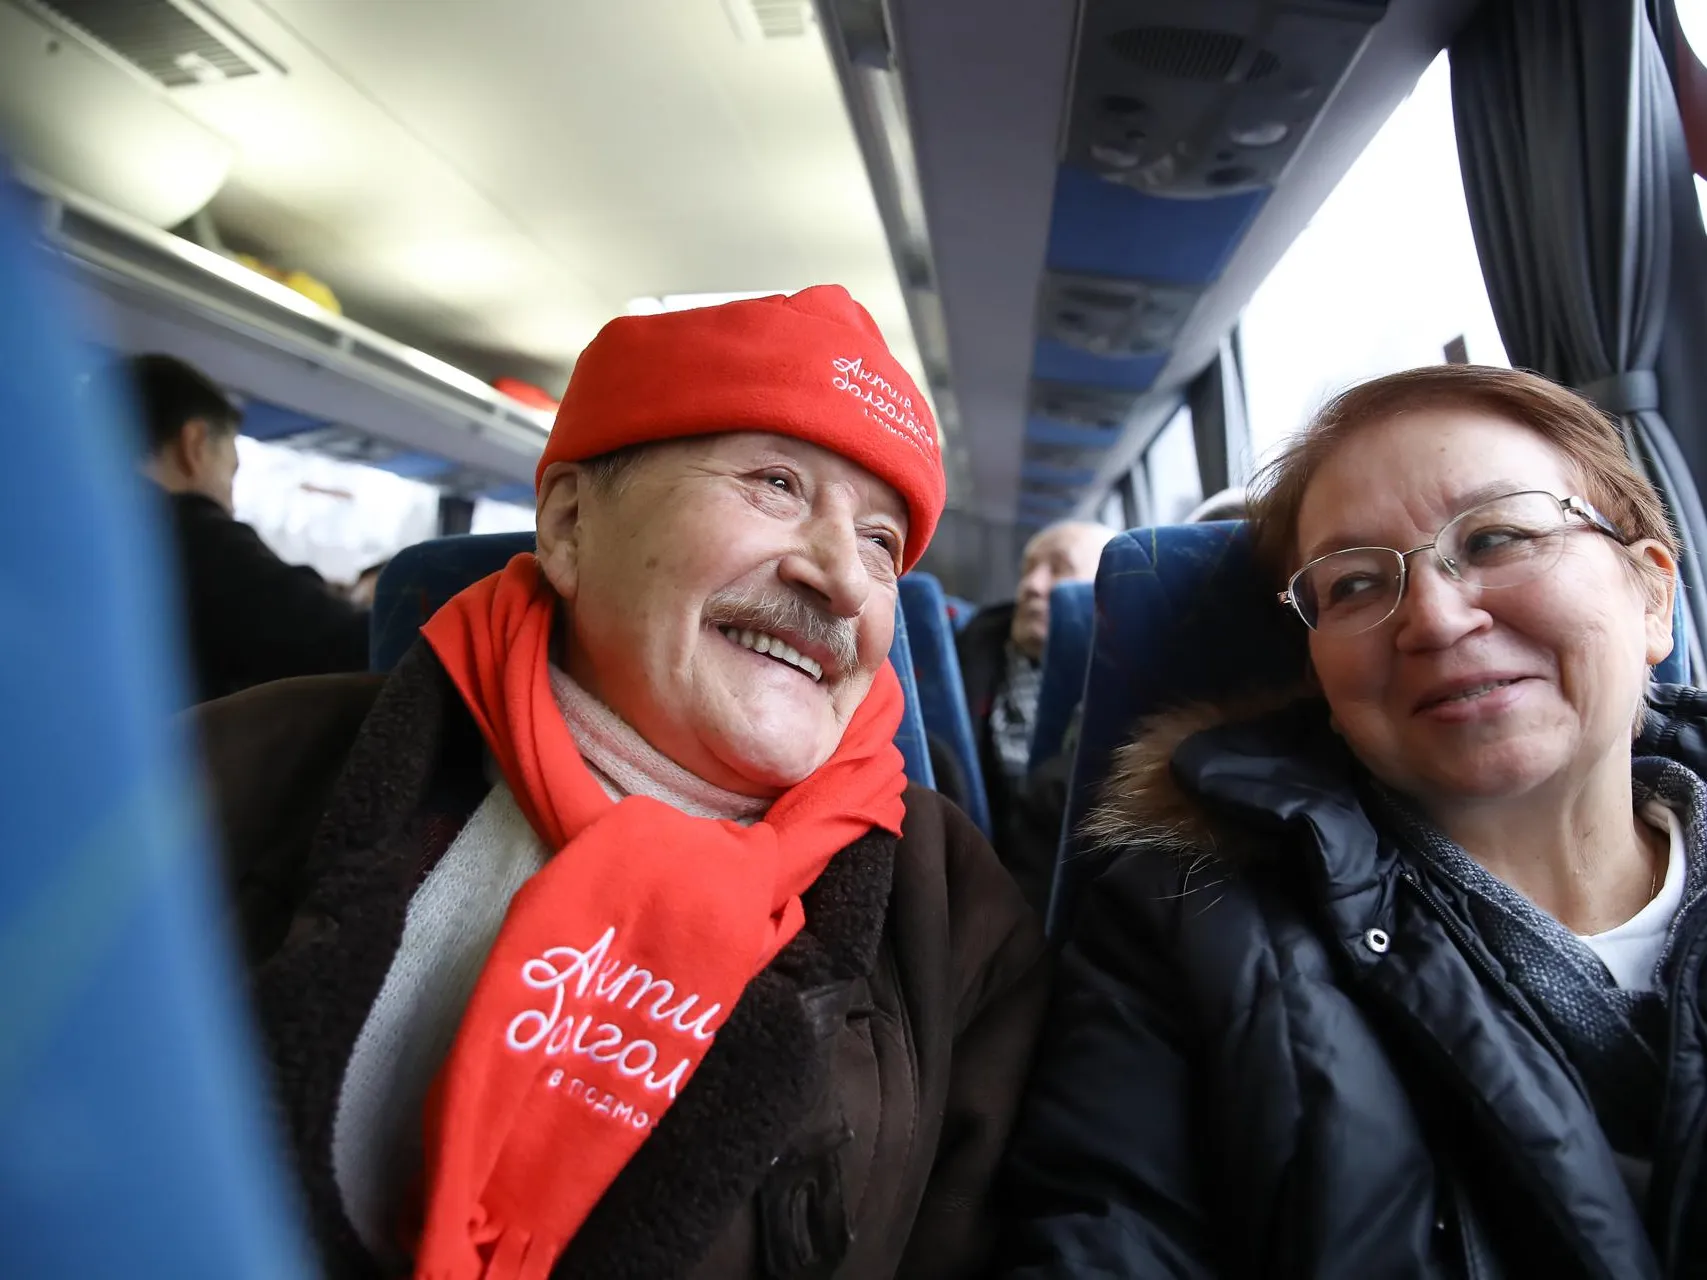 Автобус долголетие. Экскурсии для пенсионеров. Московское долголетие экскурсии. Пенсионеры в самолете. Московское долголетие экскурсии для пенсионеров добрый автобус.